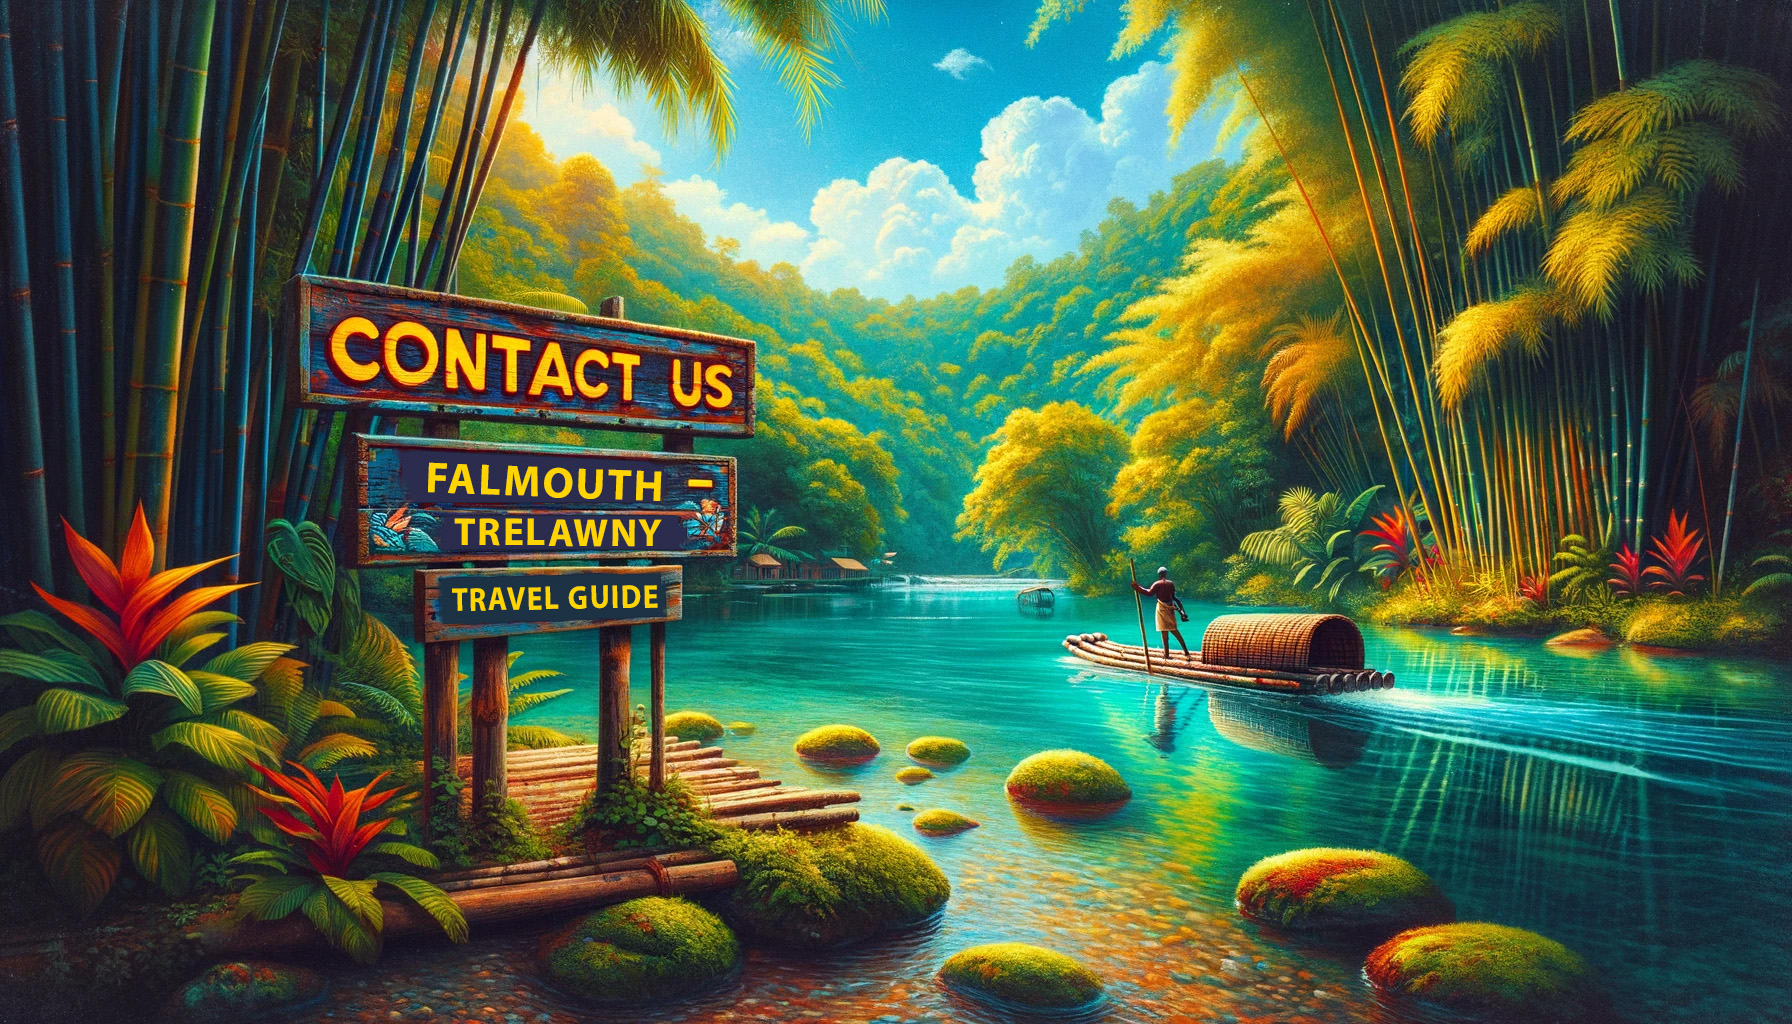 Contact Us - Falmouth - Trelawny - Falmouth - Trelawny Travel Guide